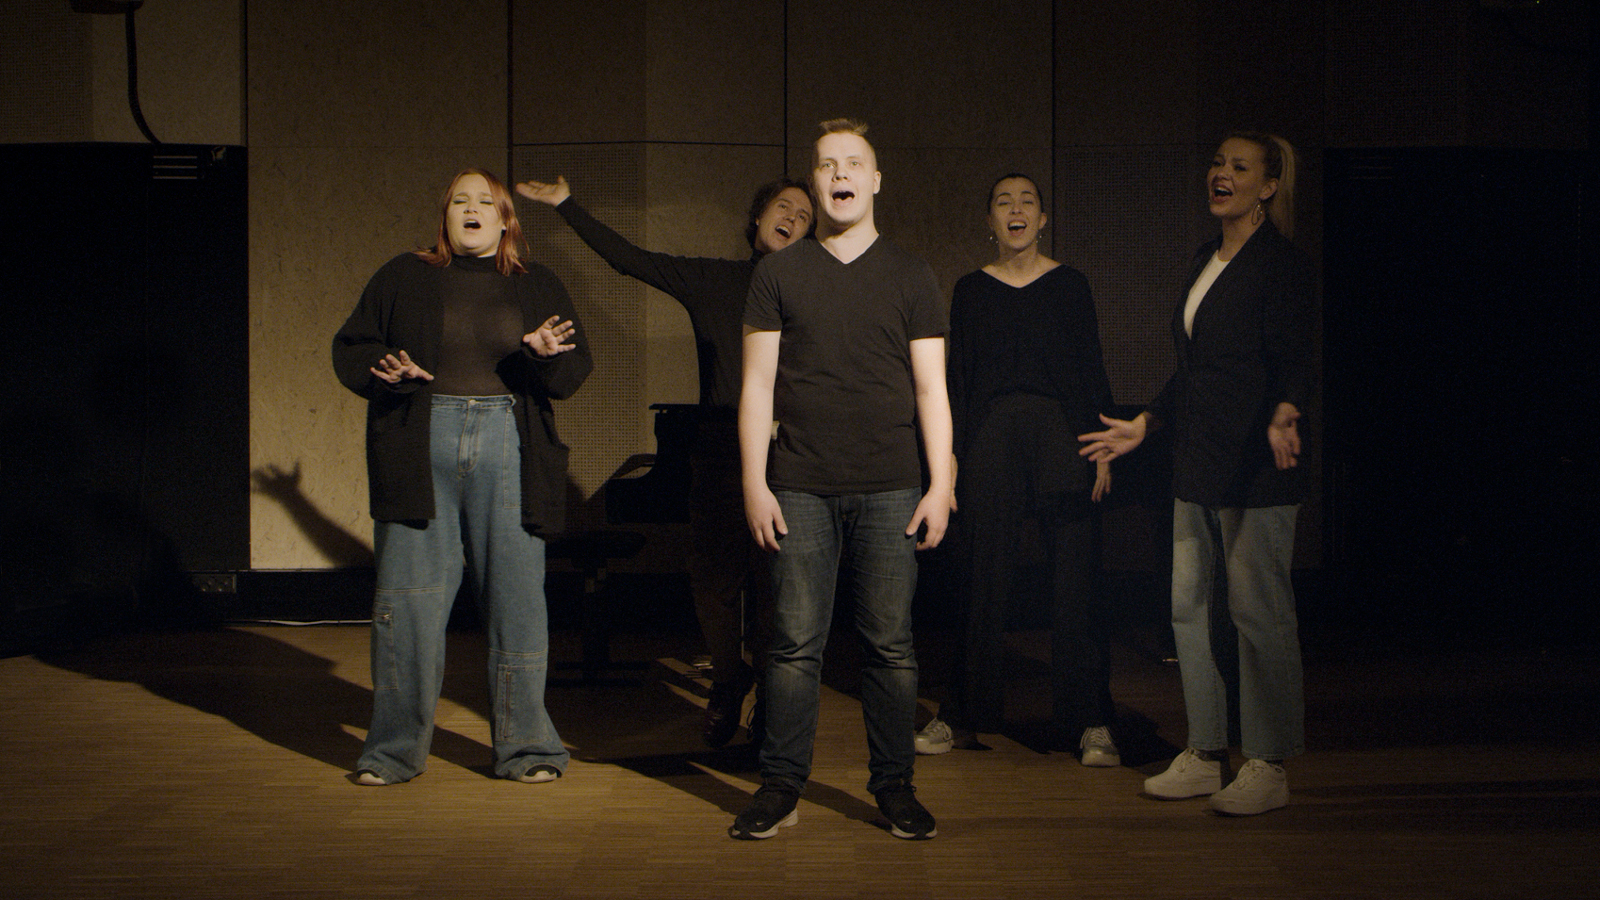 Kuvassa ovat Hoosiannan viisi laulajaa tummahkossa kuvassa ja yksi heistä on keskellä kuvaa.